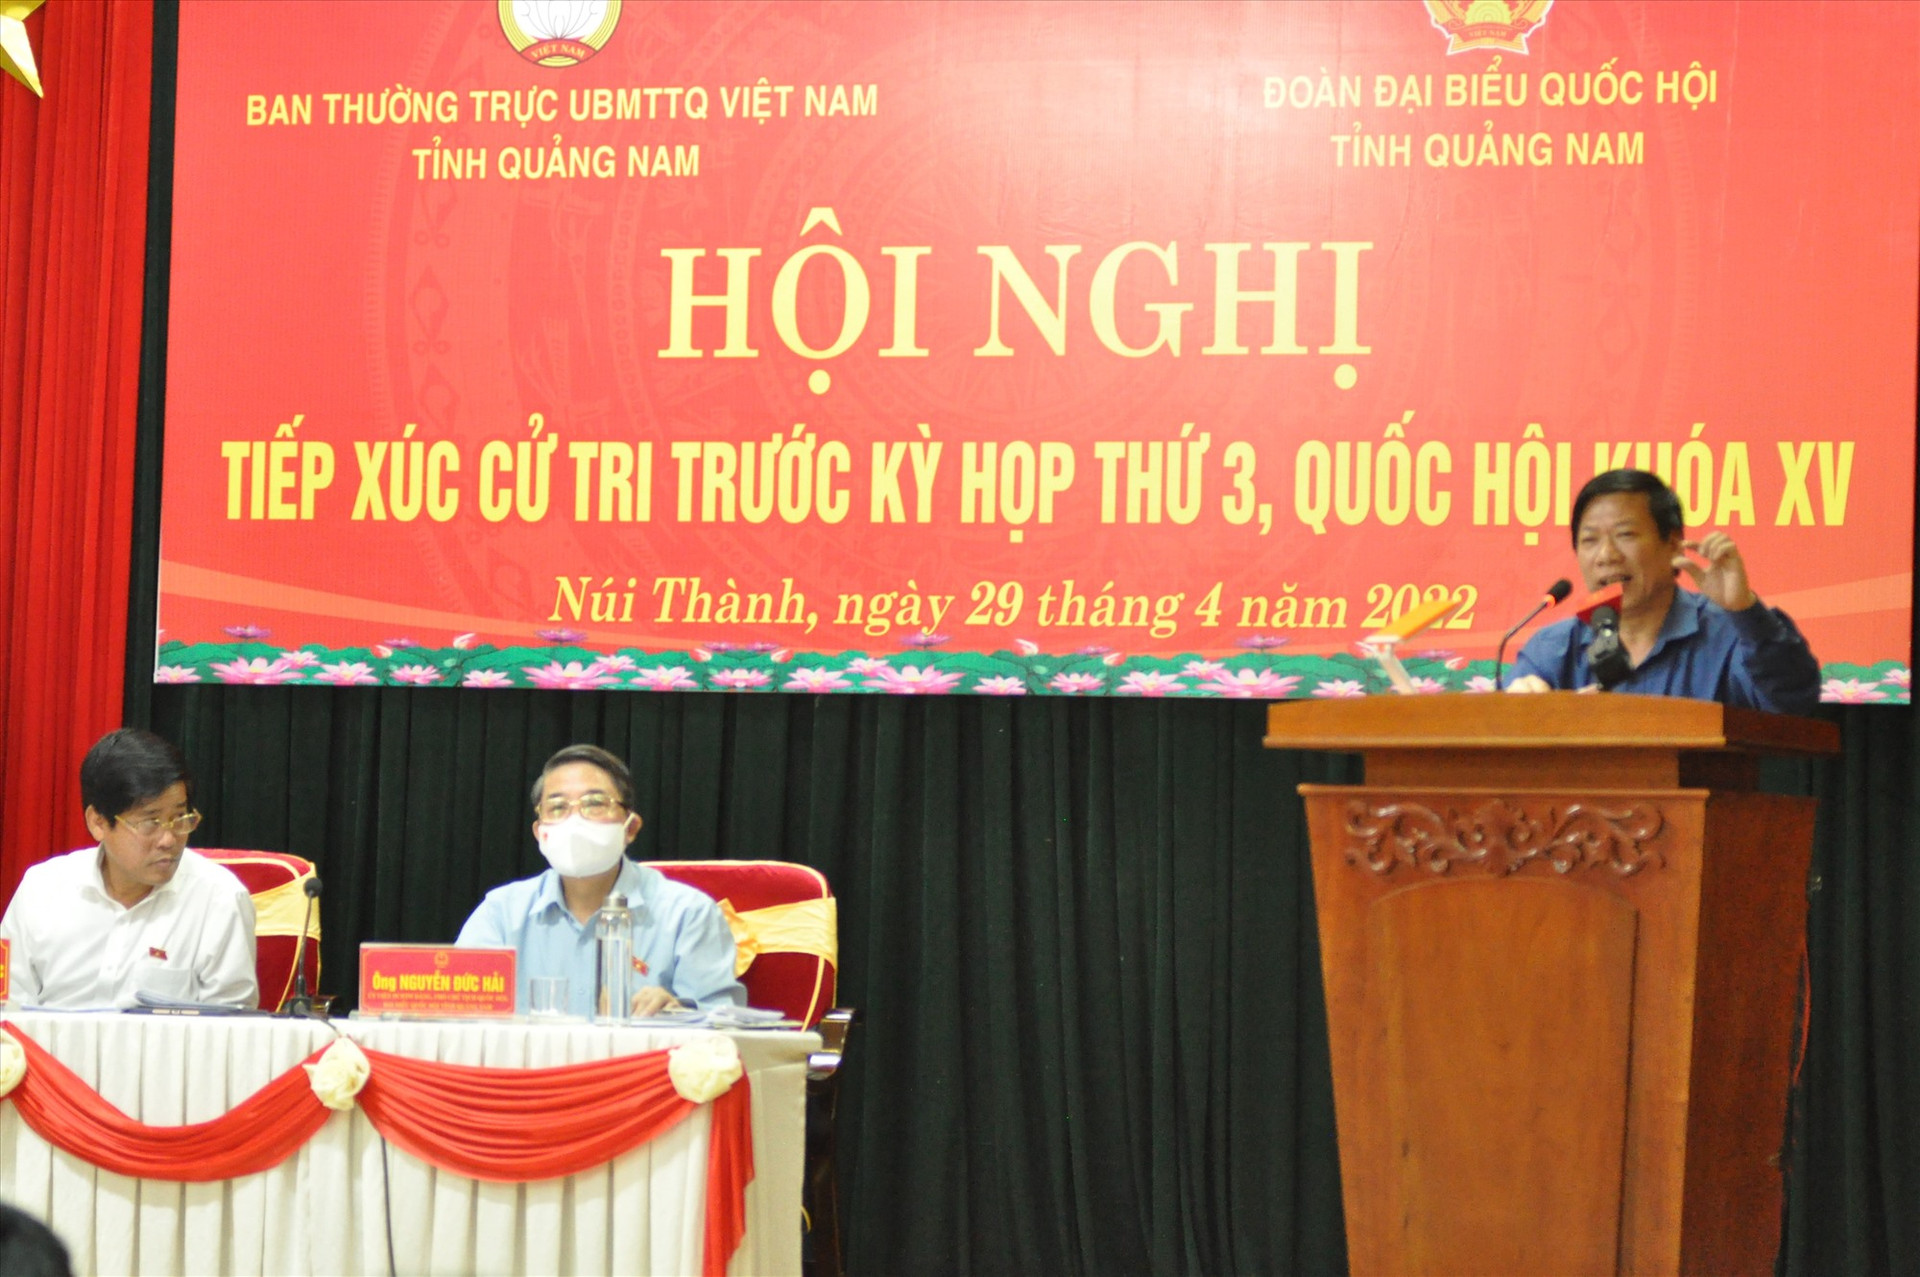 Phó Giám đốc Sở LĐ-TB&XH Trần Văn Chiến giải thích băn khoăn của cử tri. Ảnh: X.P